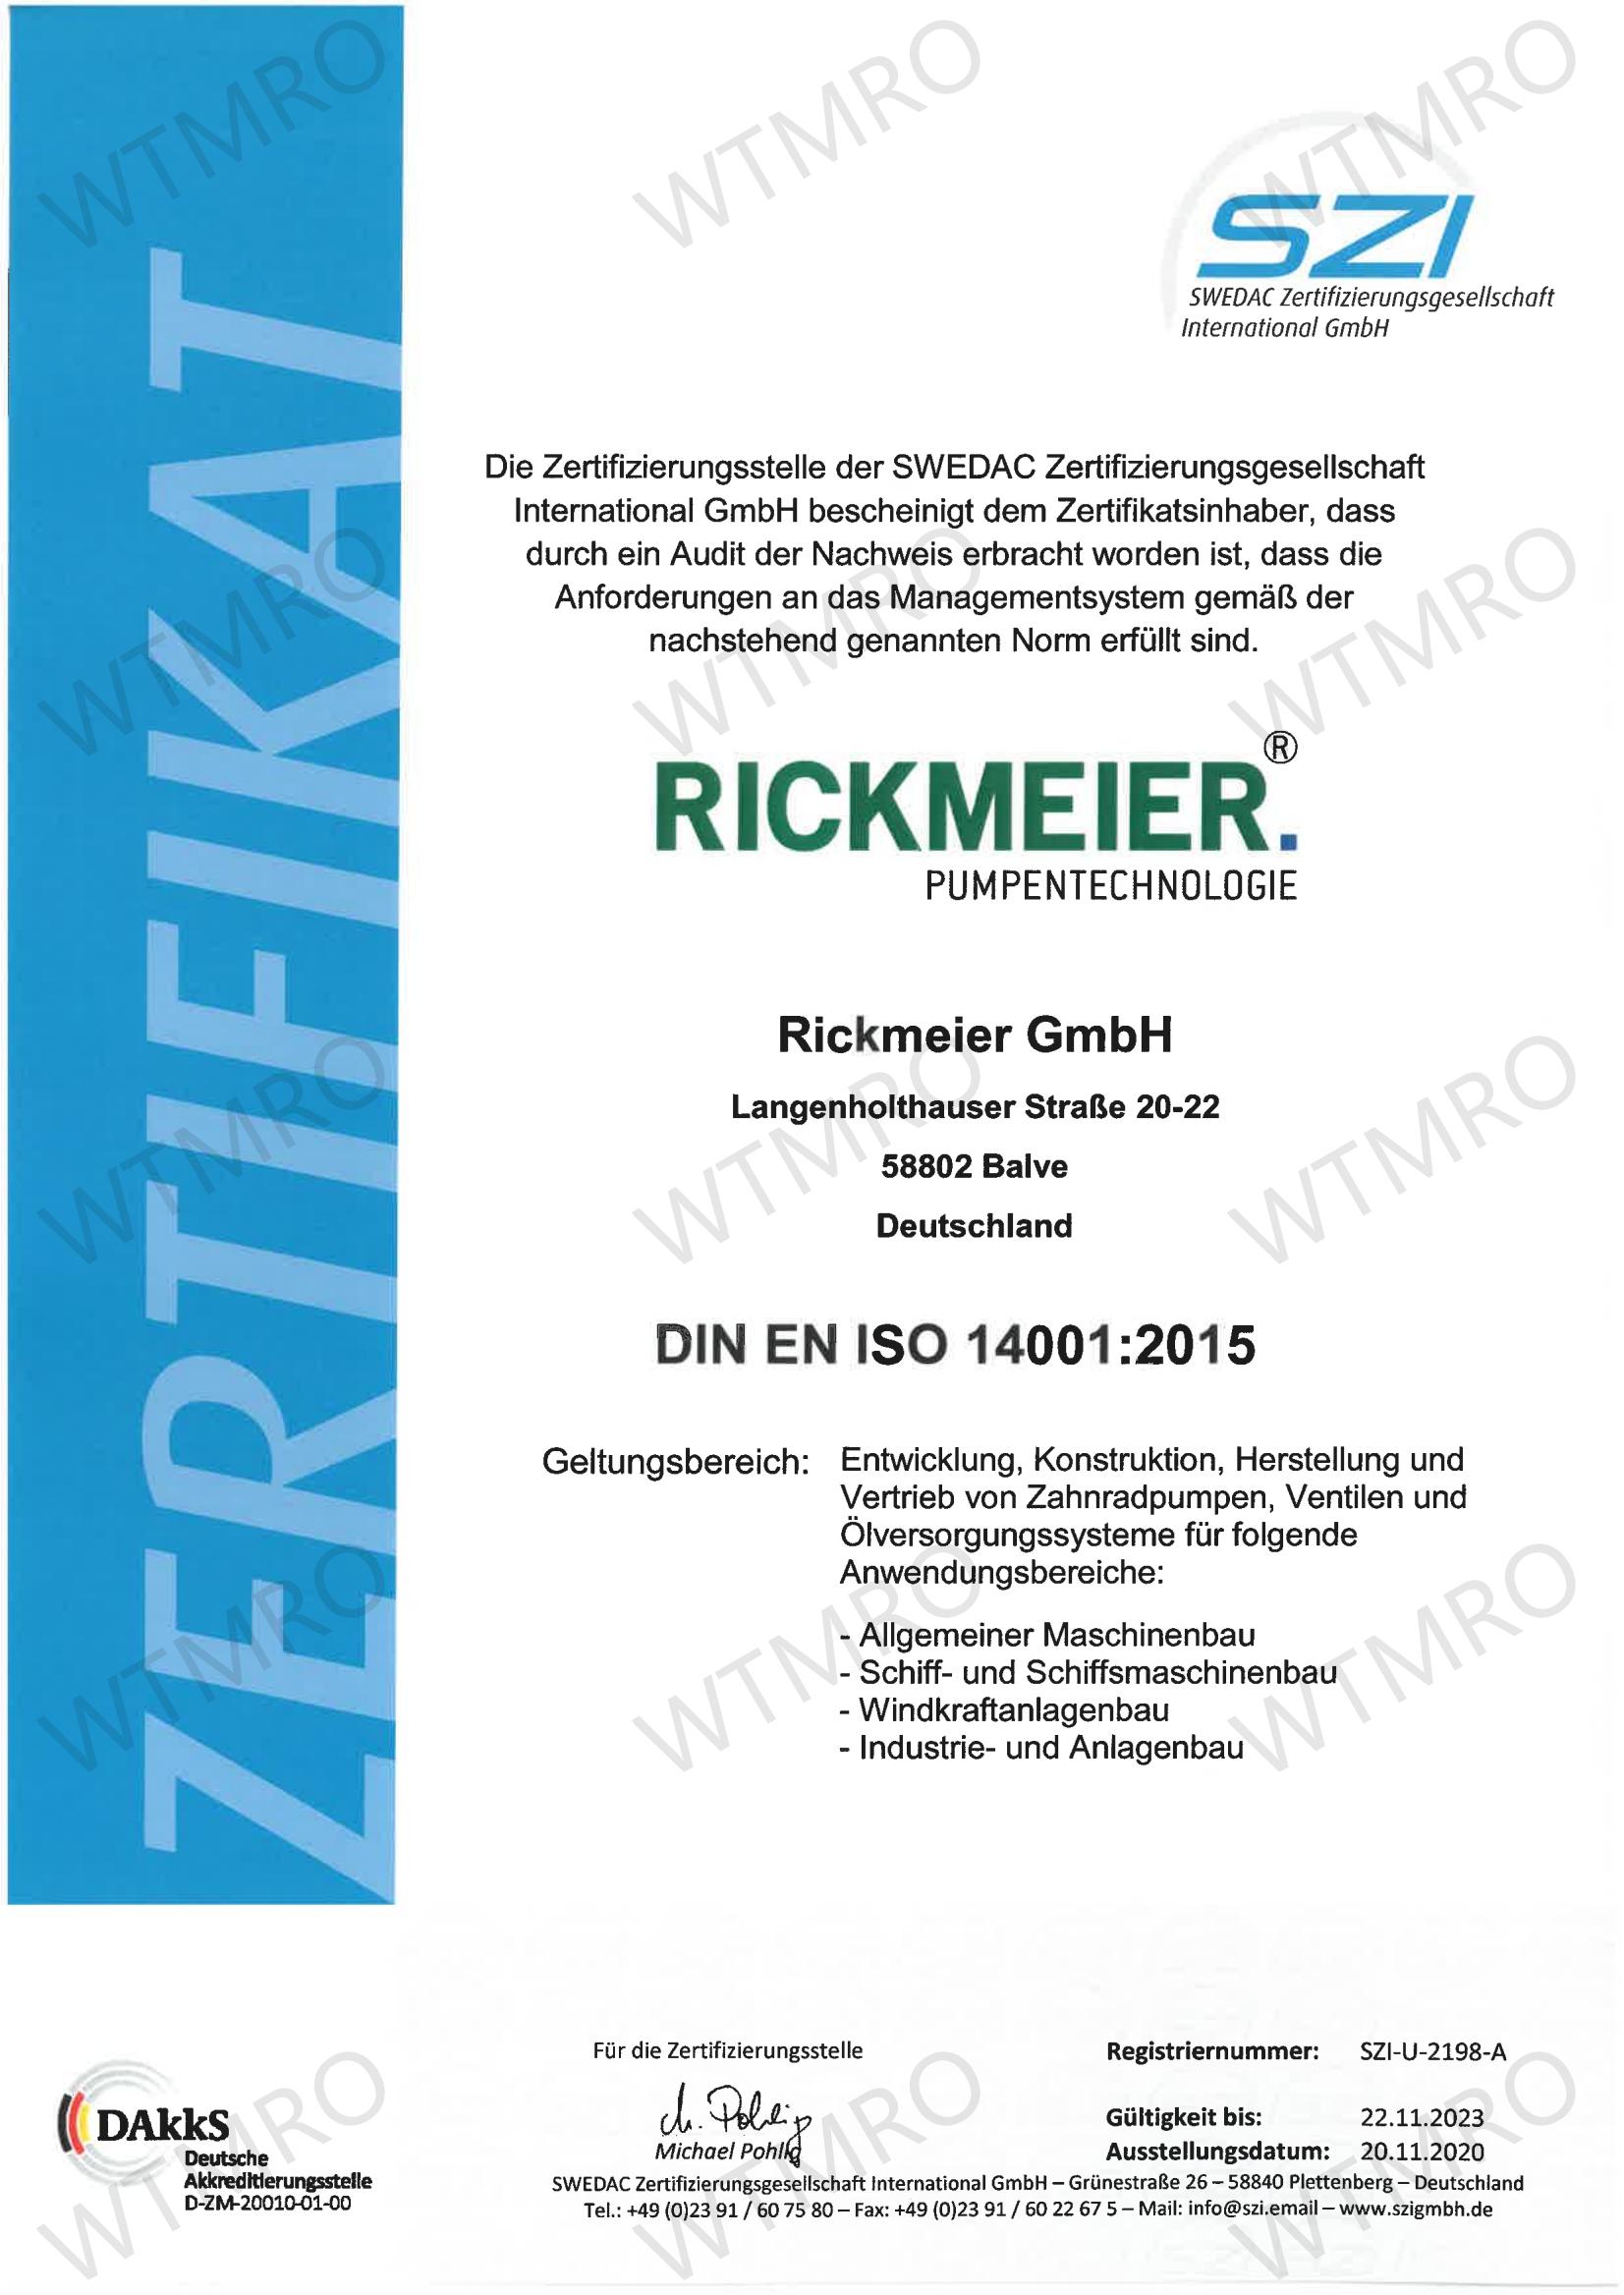 ISO 14001 认证证书